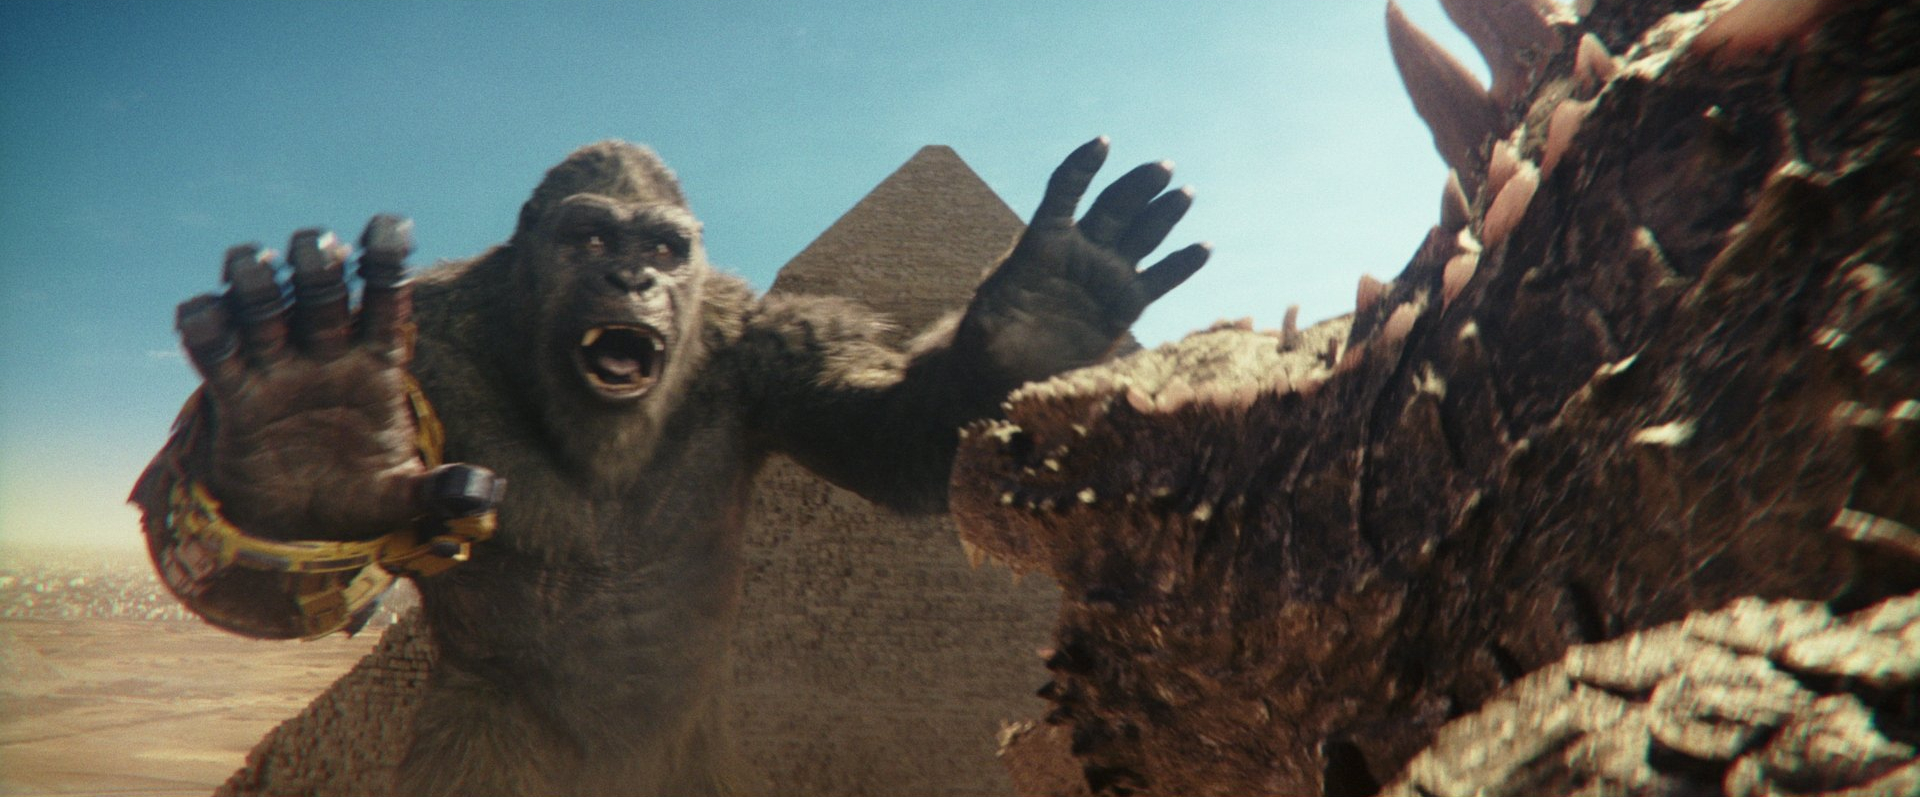 Kong tries to recruit Godzilla